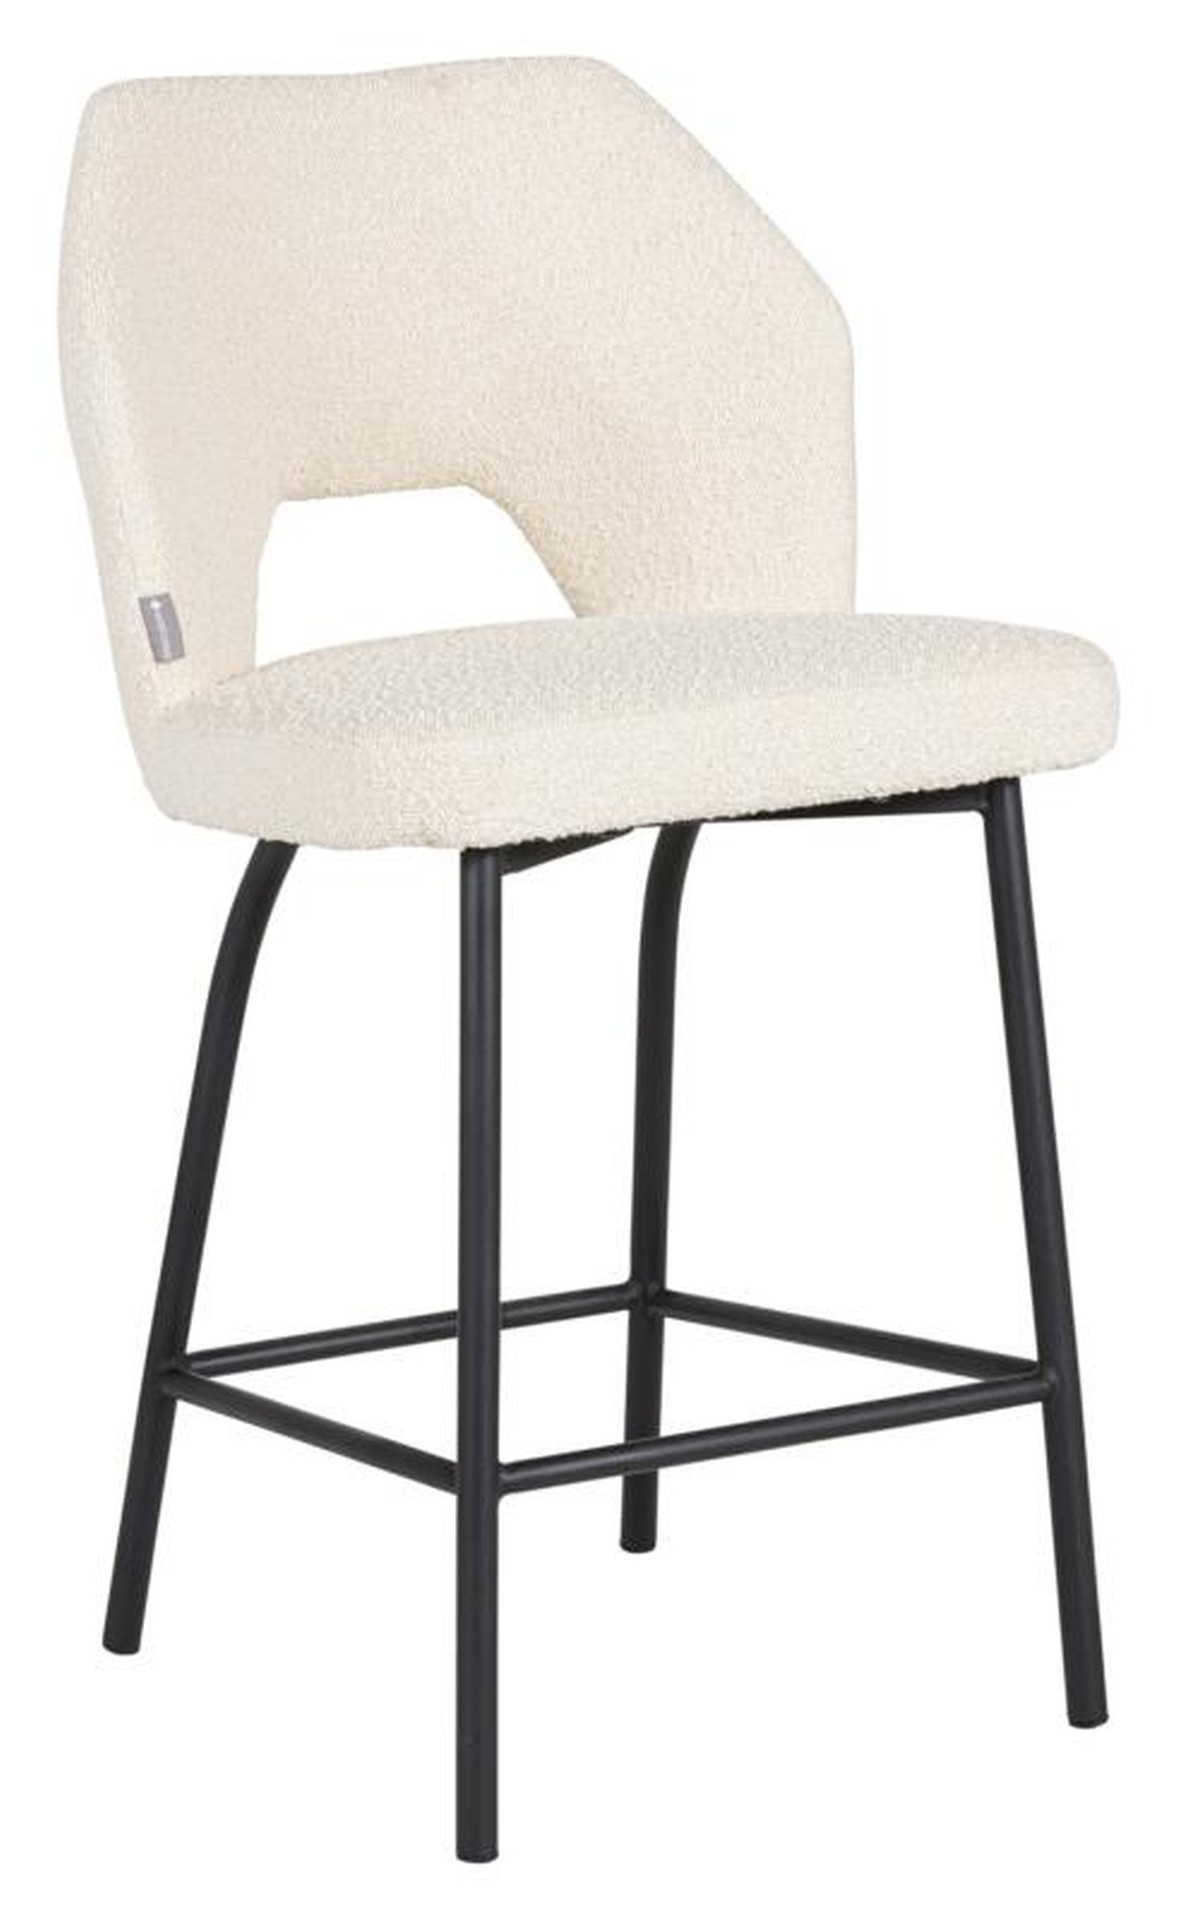 Der Barstuhl Bloom überzeugt mit seinem modernem aber auch schlichtem Design. Gefertigt wurde der Stuhl aus einem Boucle Stoff, welcher einen Natur Farbton besitzt. Das Gestell ist aus Metall und ist Schwarz.